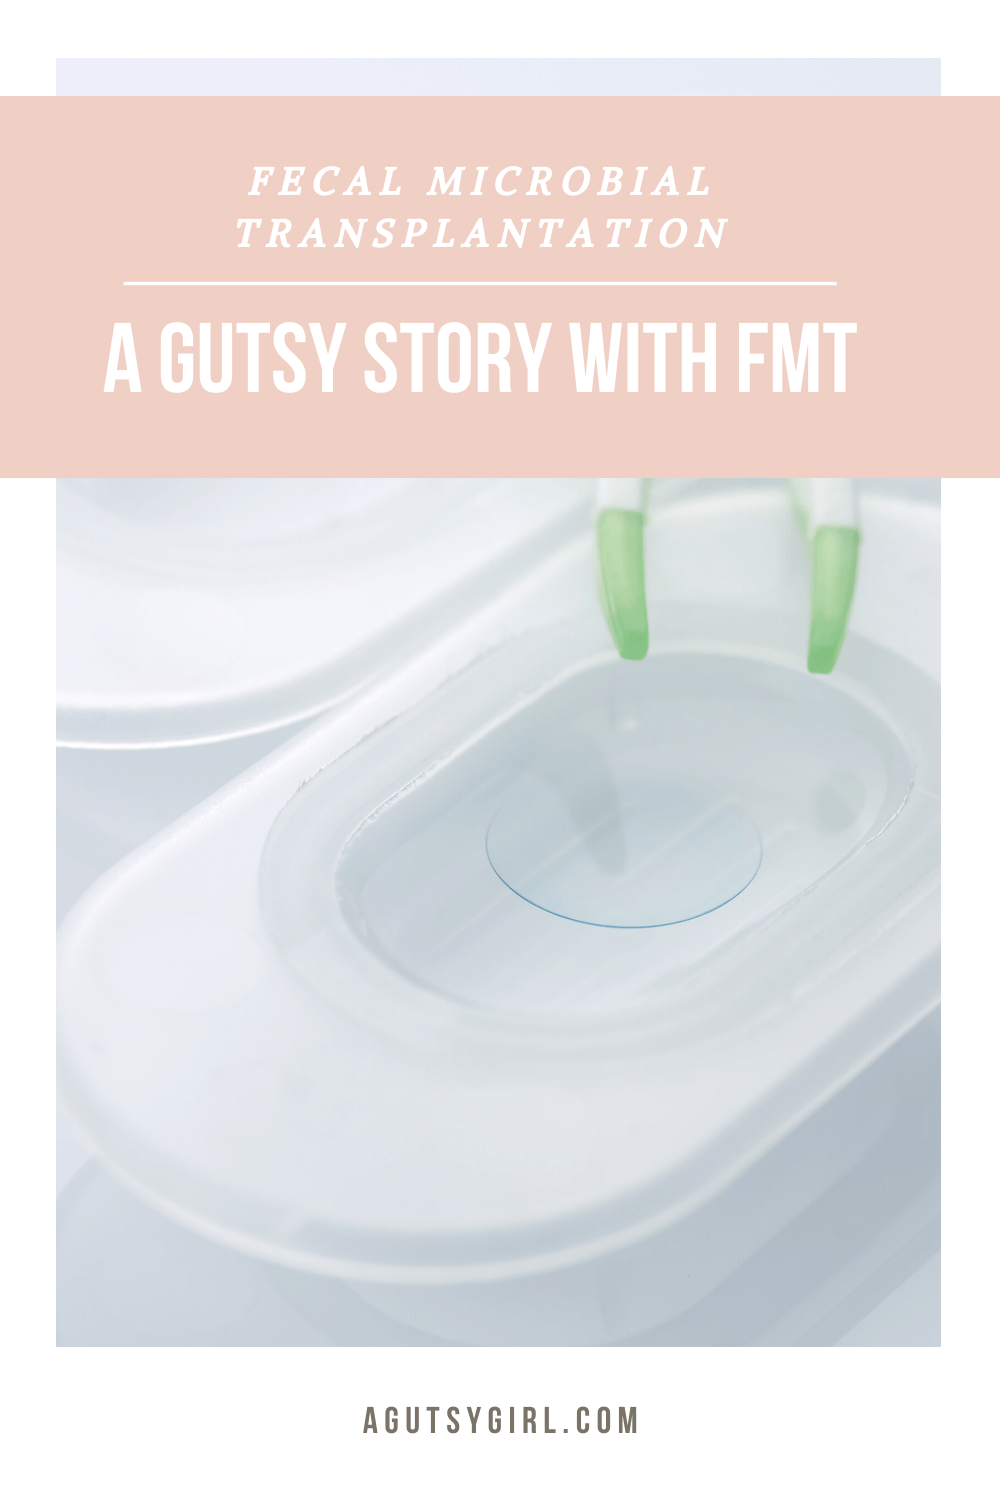 A Gutsy Story with FMT agutsygirl.com #fmt #guthealth #cdiff Fecal microbial transplantation